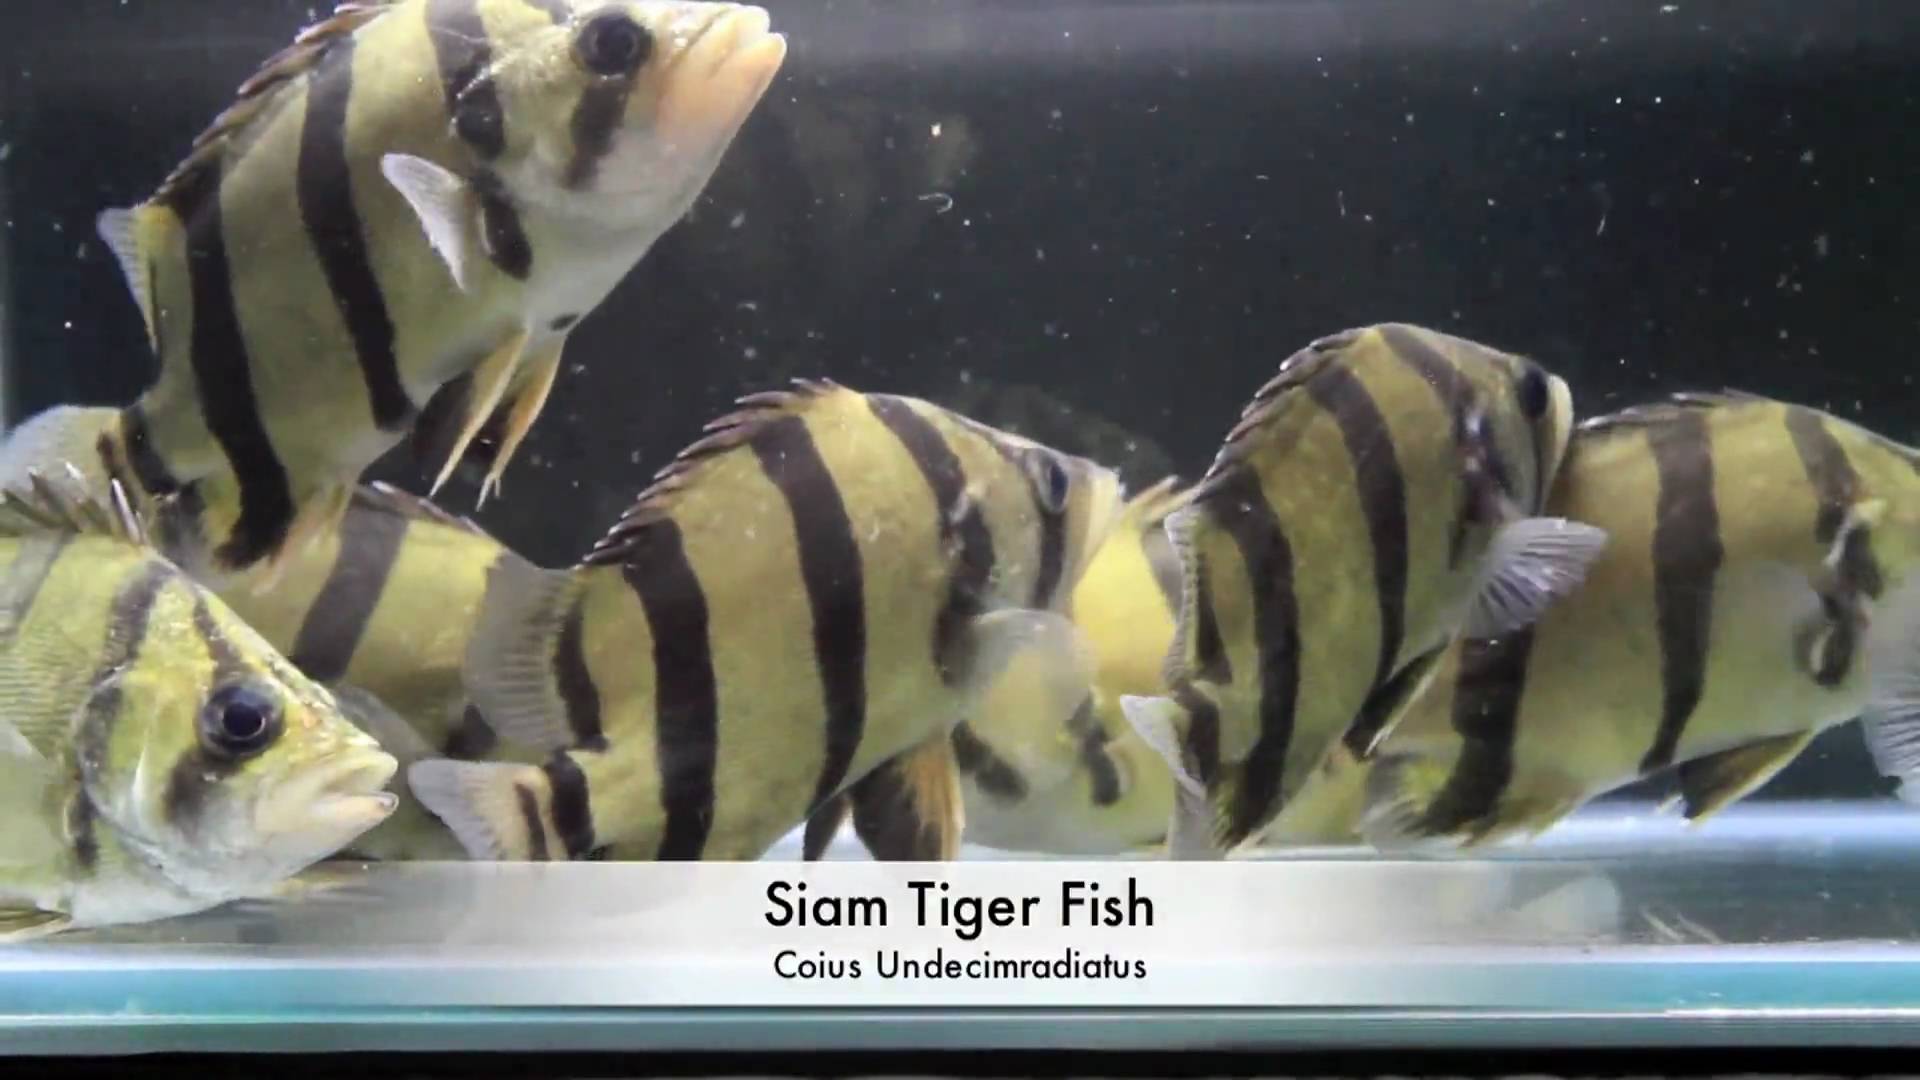 siam tiger fish / Aquarium Tropical Fish - YouTube